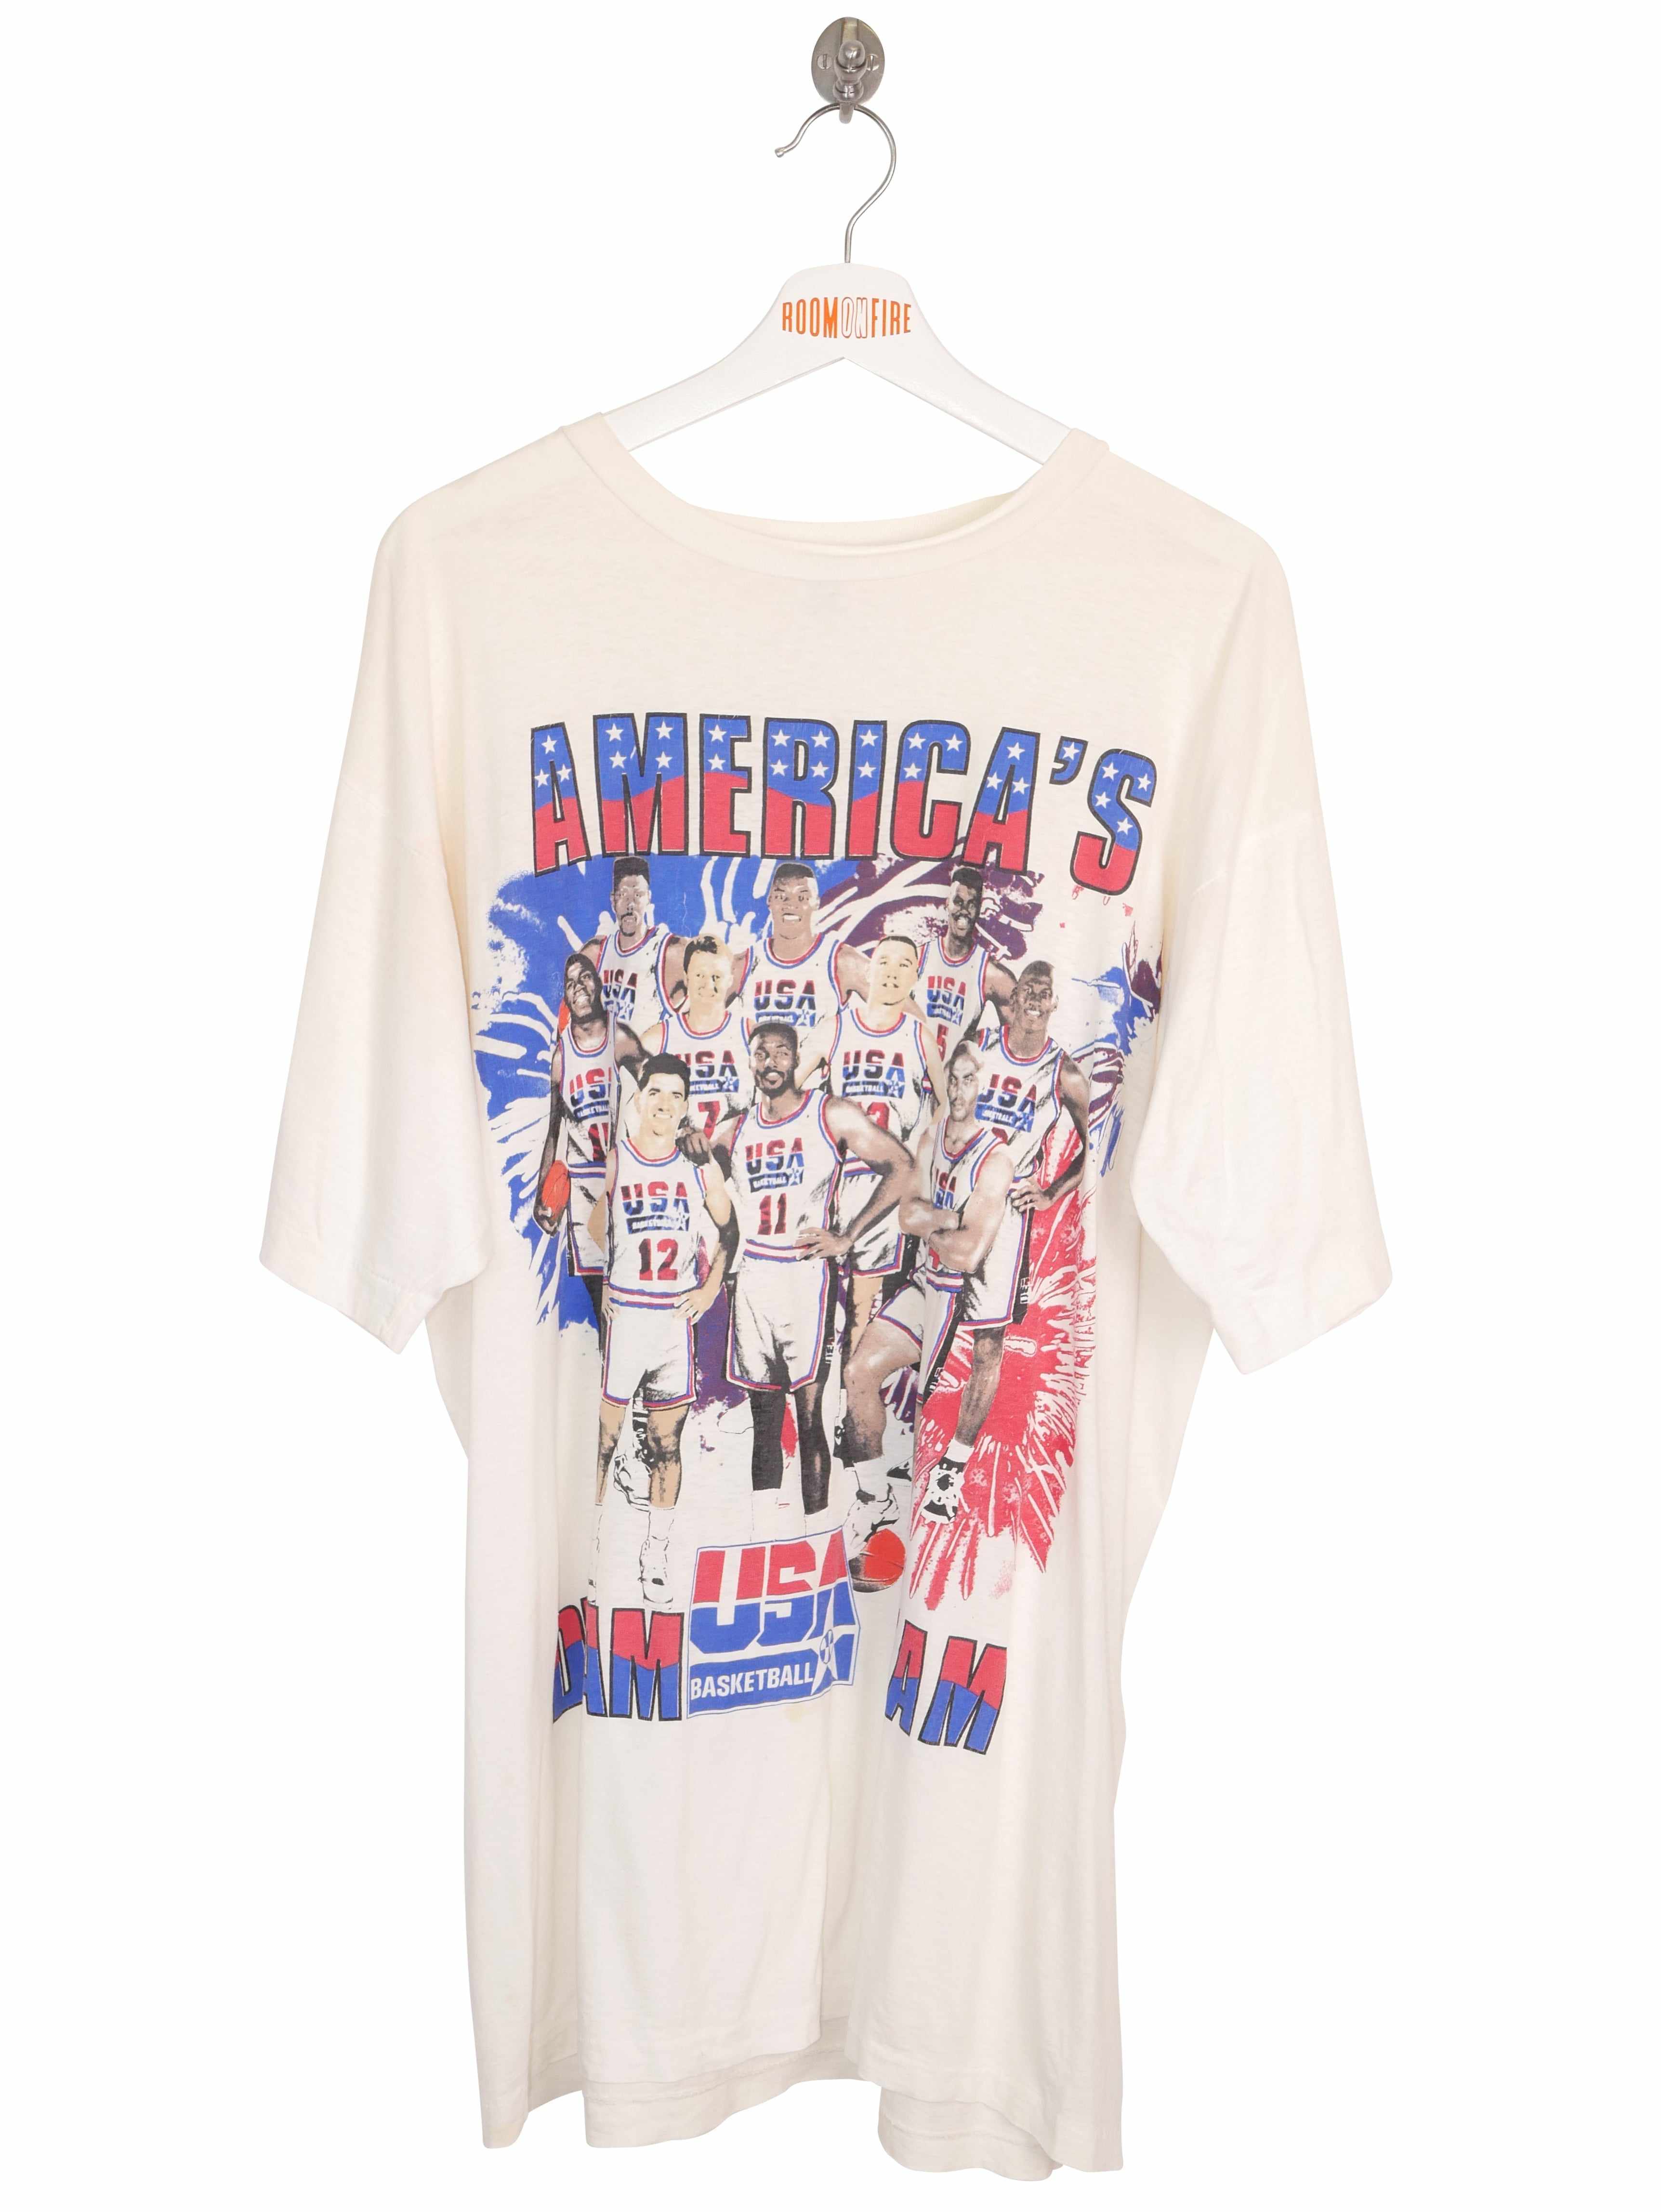 Vintage 1992 Dream Team World Tour Basketball T-Shirt (XL)-T-SHIRT-PRO SPORT-SIZE XL-Room On Fire